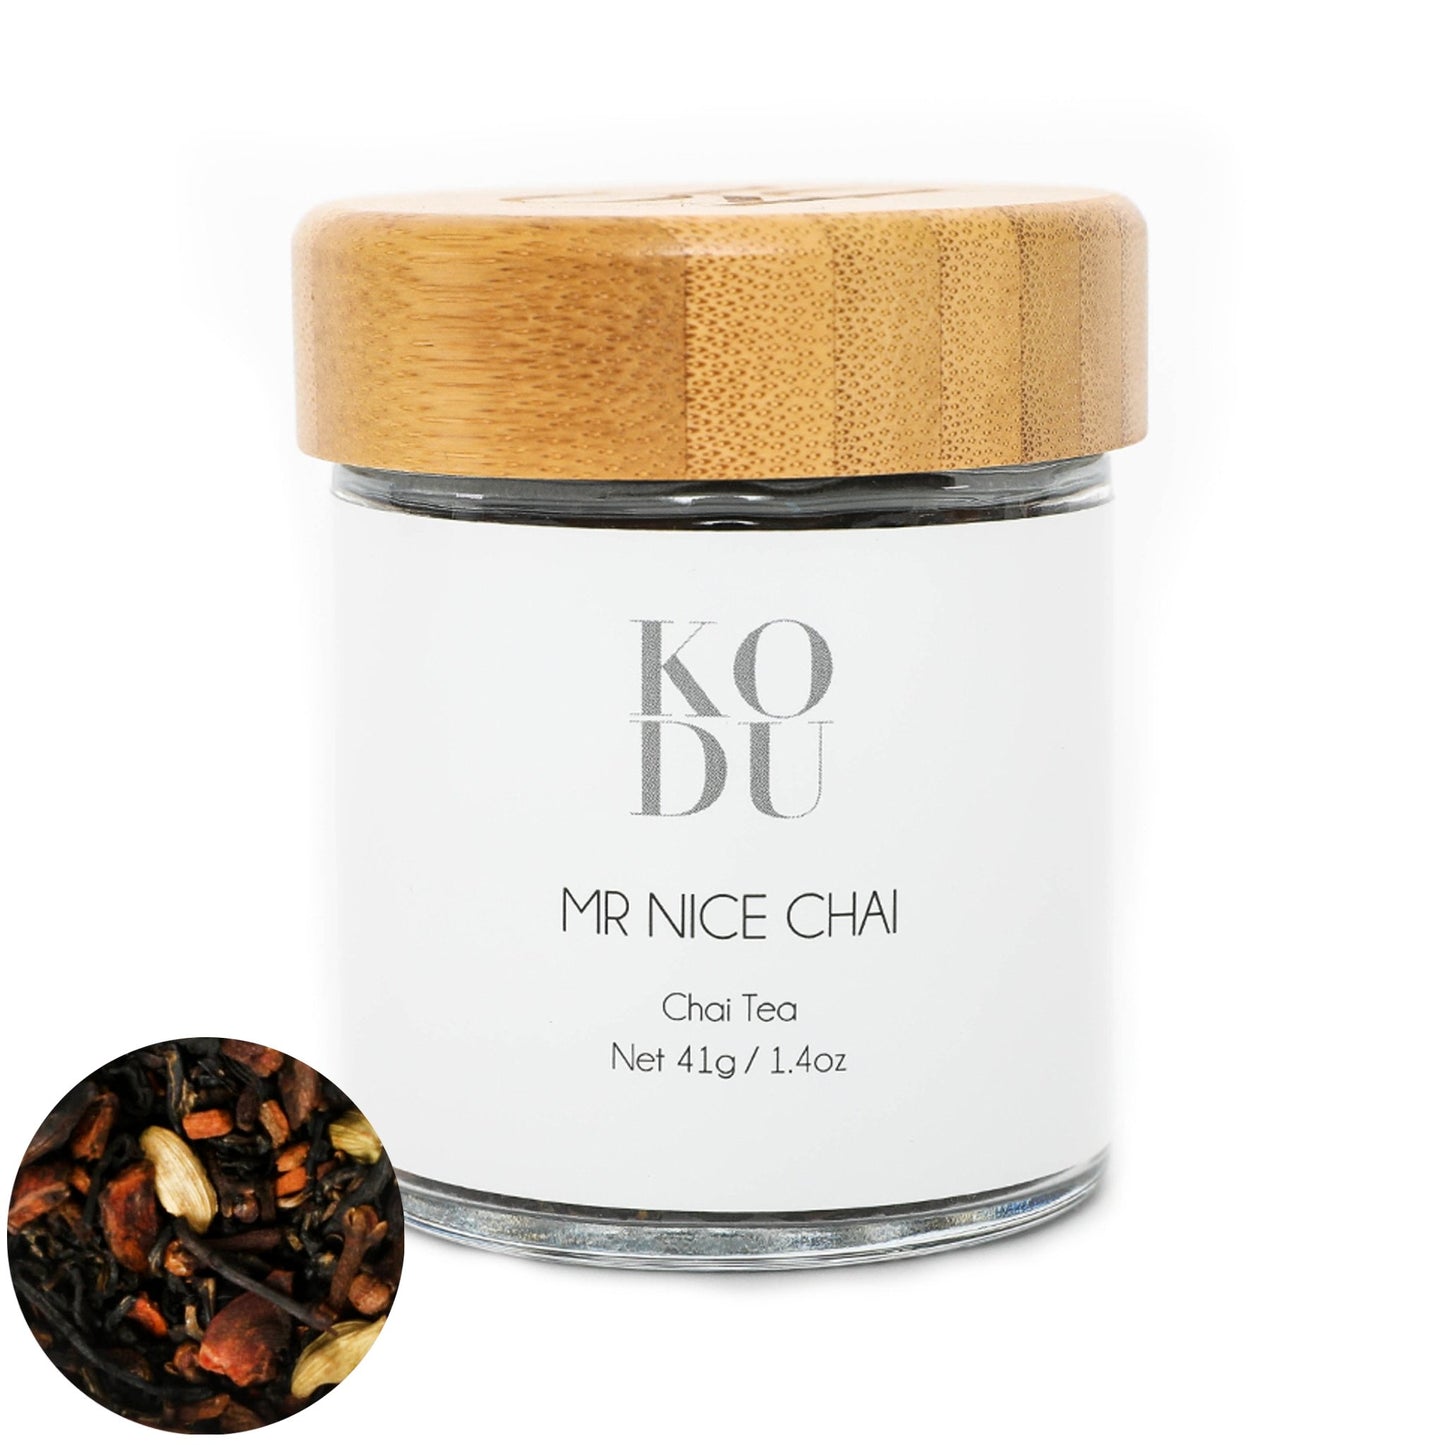 Mr. Nice Chai Tea - Loose Leaf Tea Infusion - mykodu